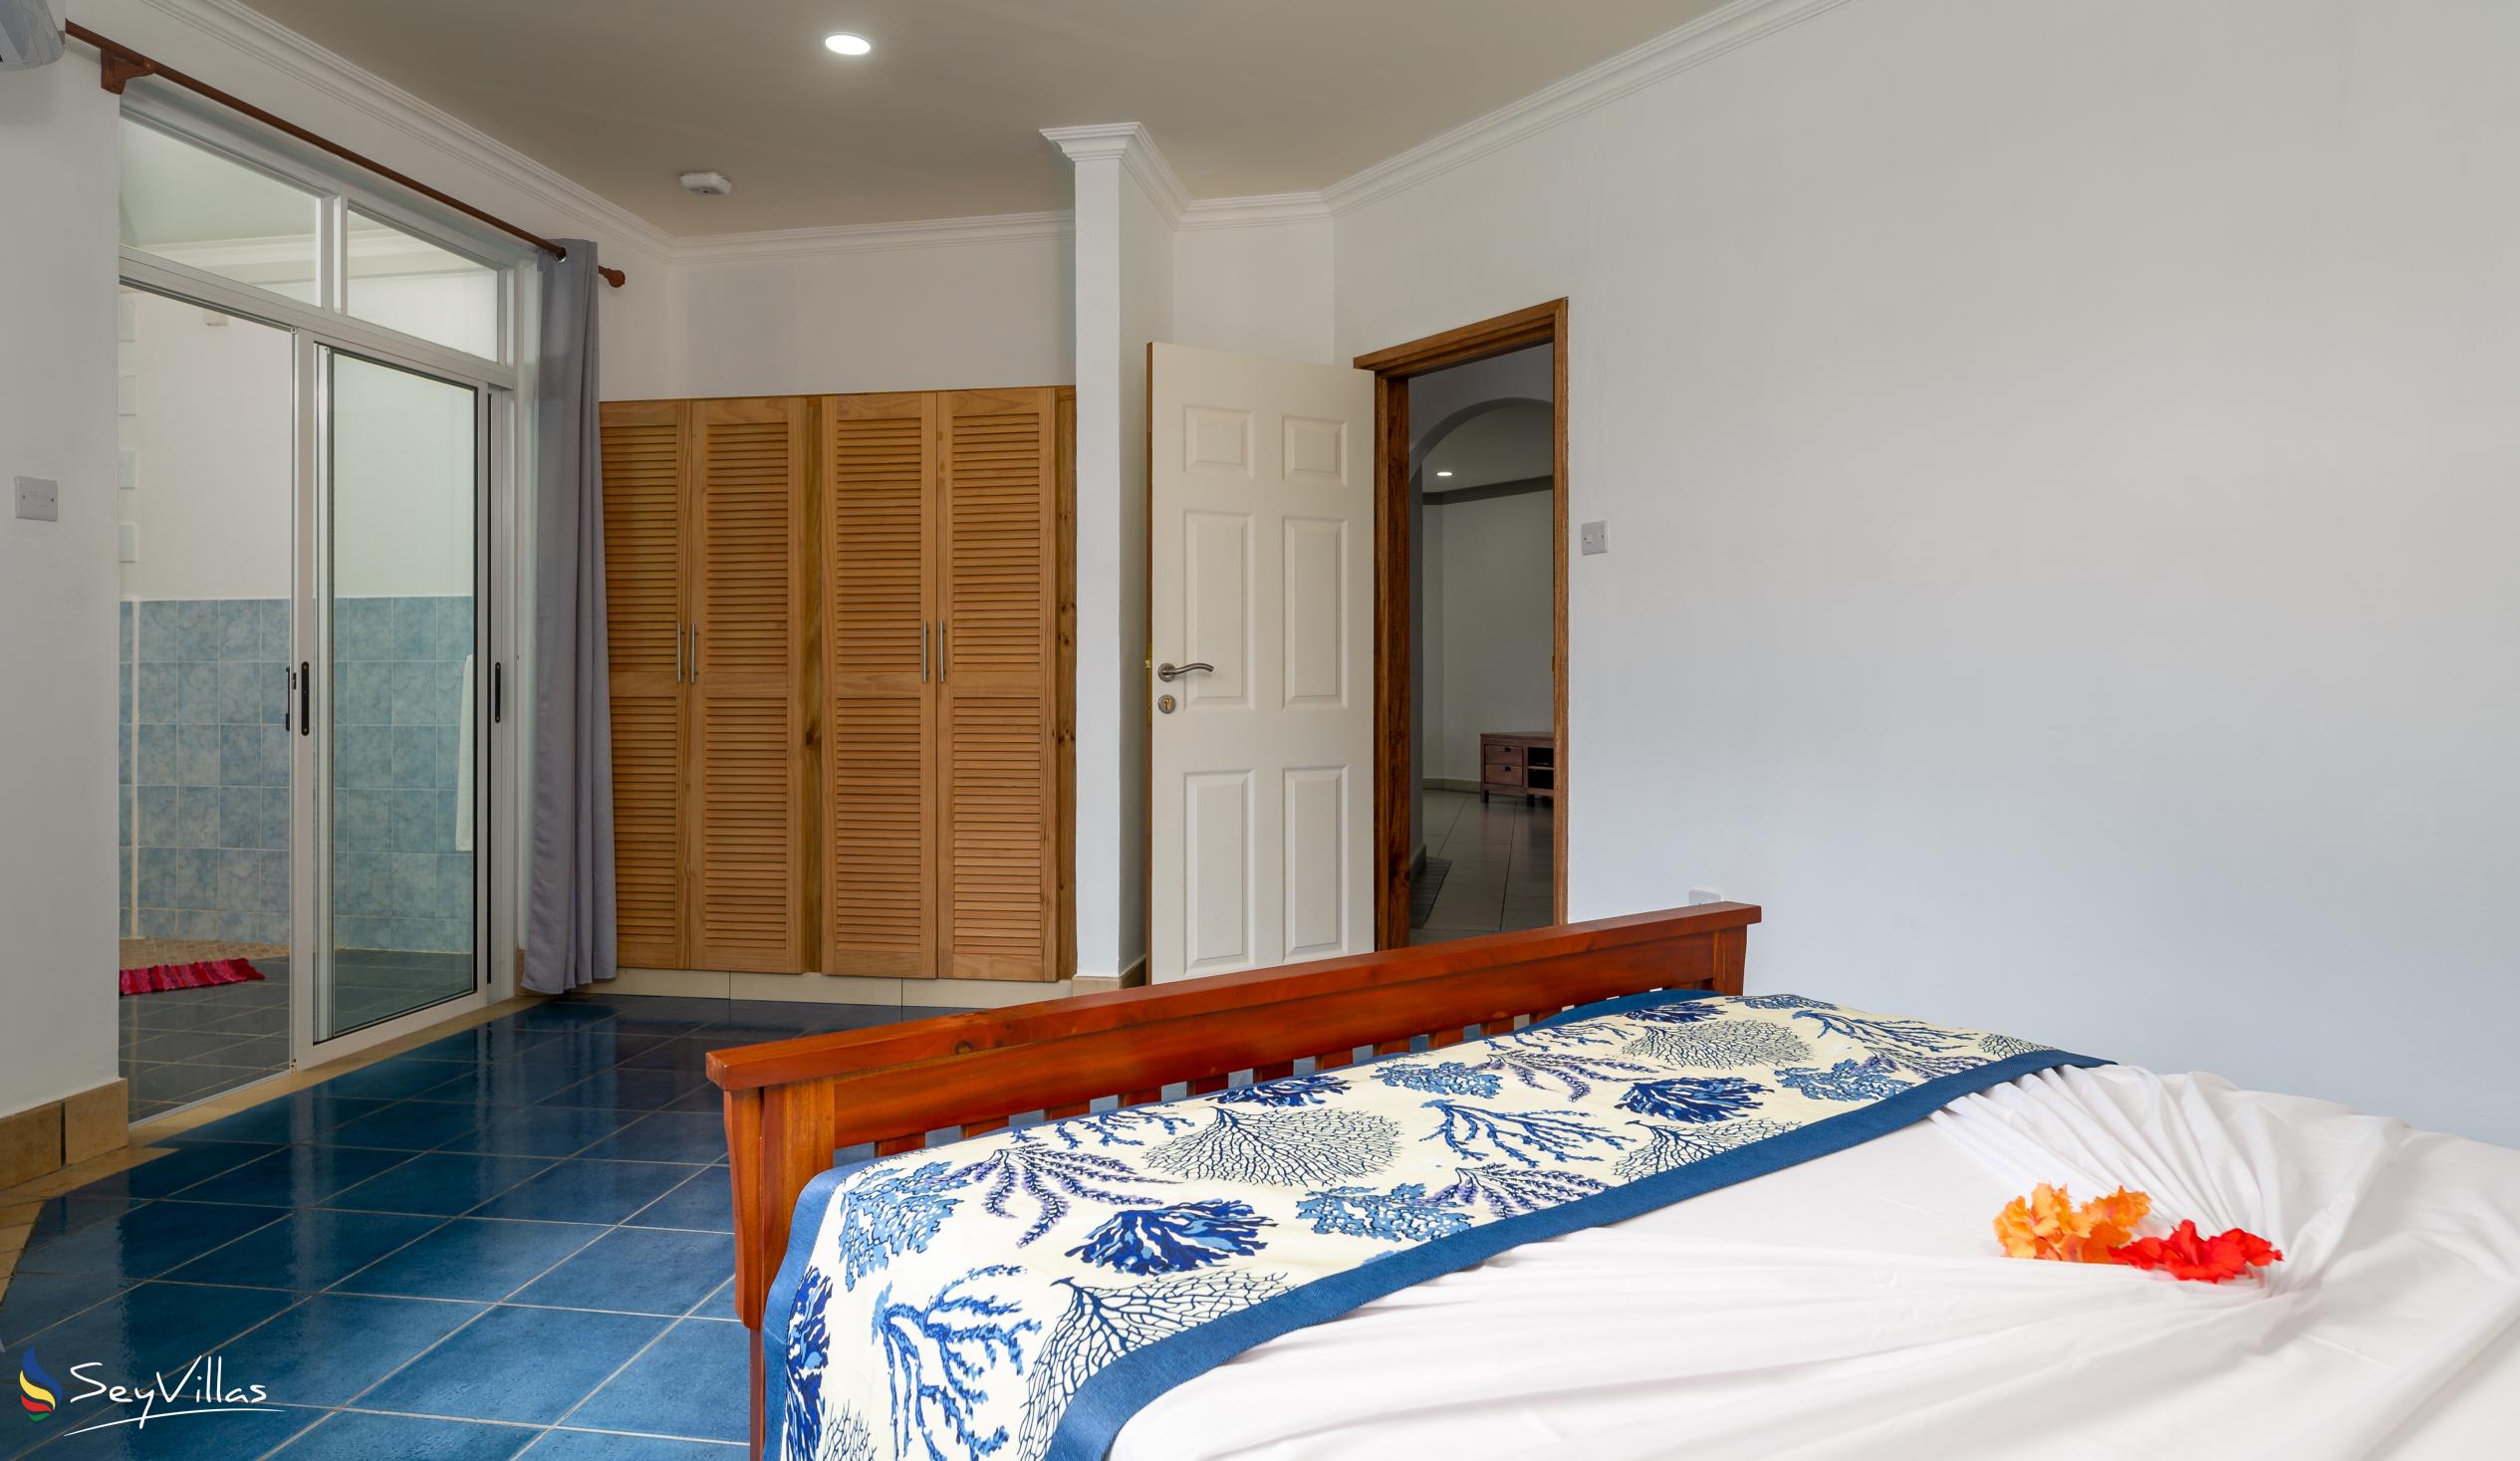 Foto 53: 340 Degrees Mountain View Apartments - Appartement avec vue sur le jardin - 2 Chambres - Mahé (Seychelles)